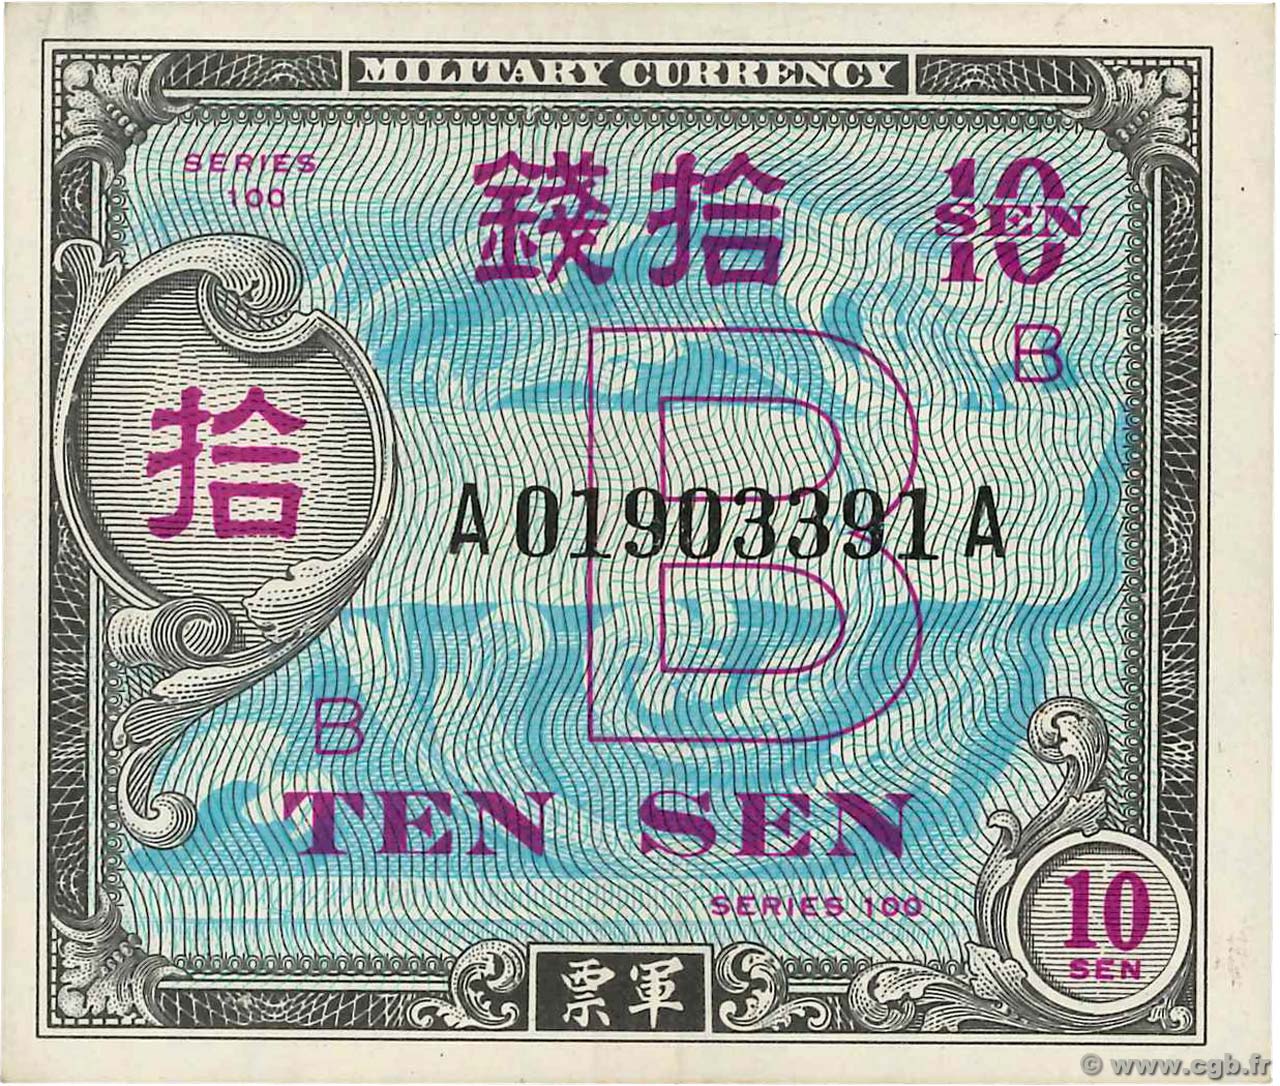 10 Sen JAPAN  1945 P.063 UNC